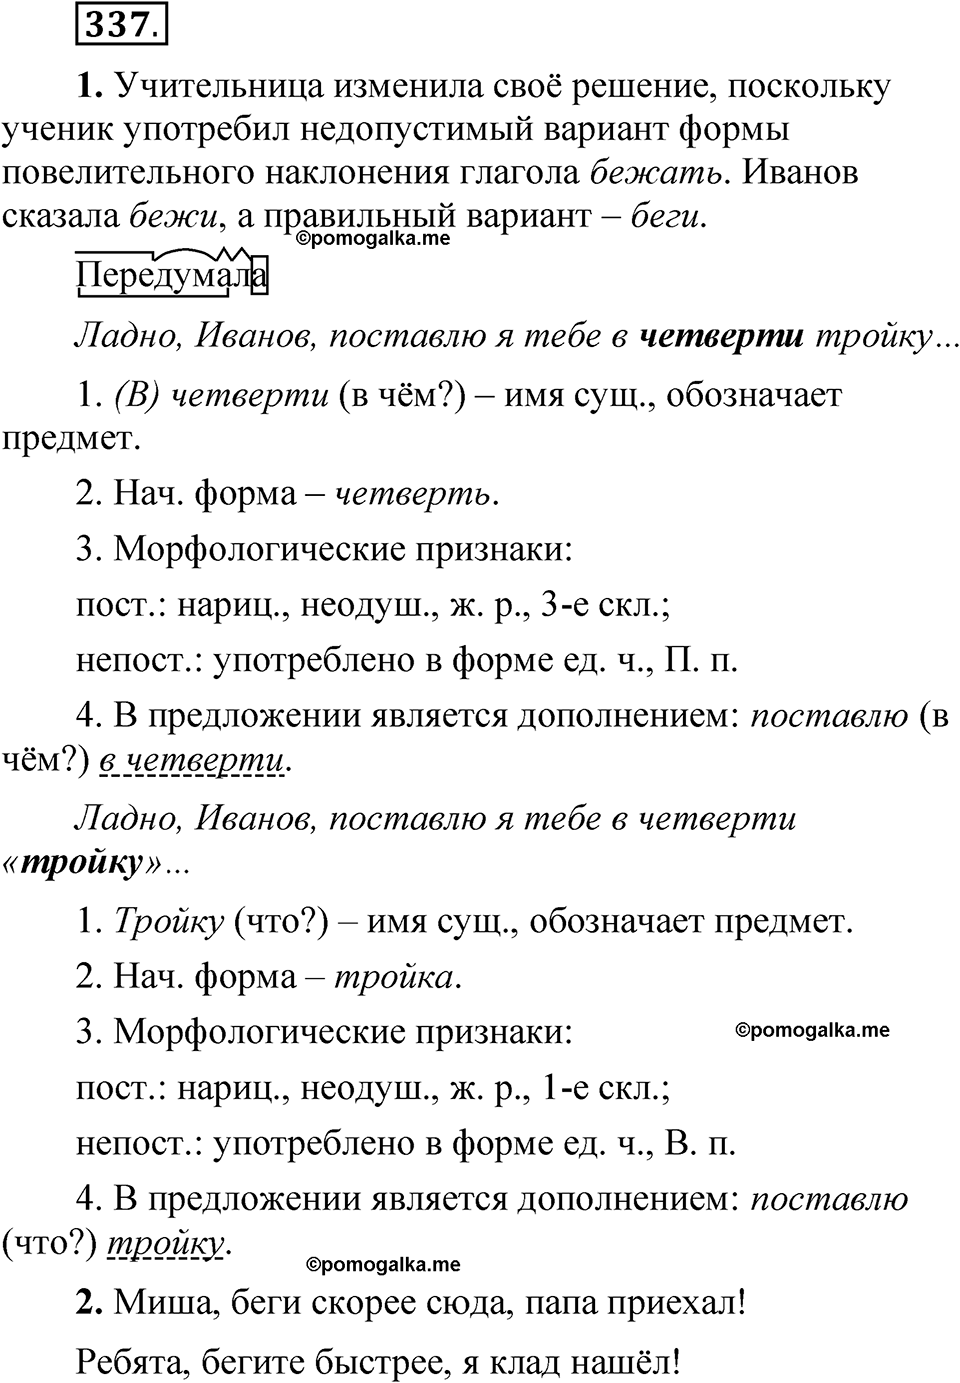 страница 237 упражнение 337 русский язык 5 класс Быстрова, Кибирева 2 часть 2021 год